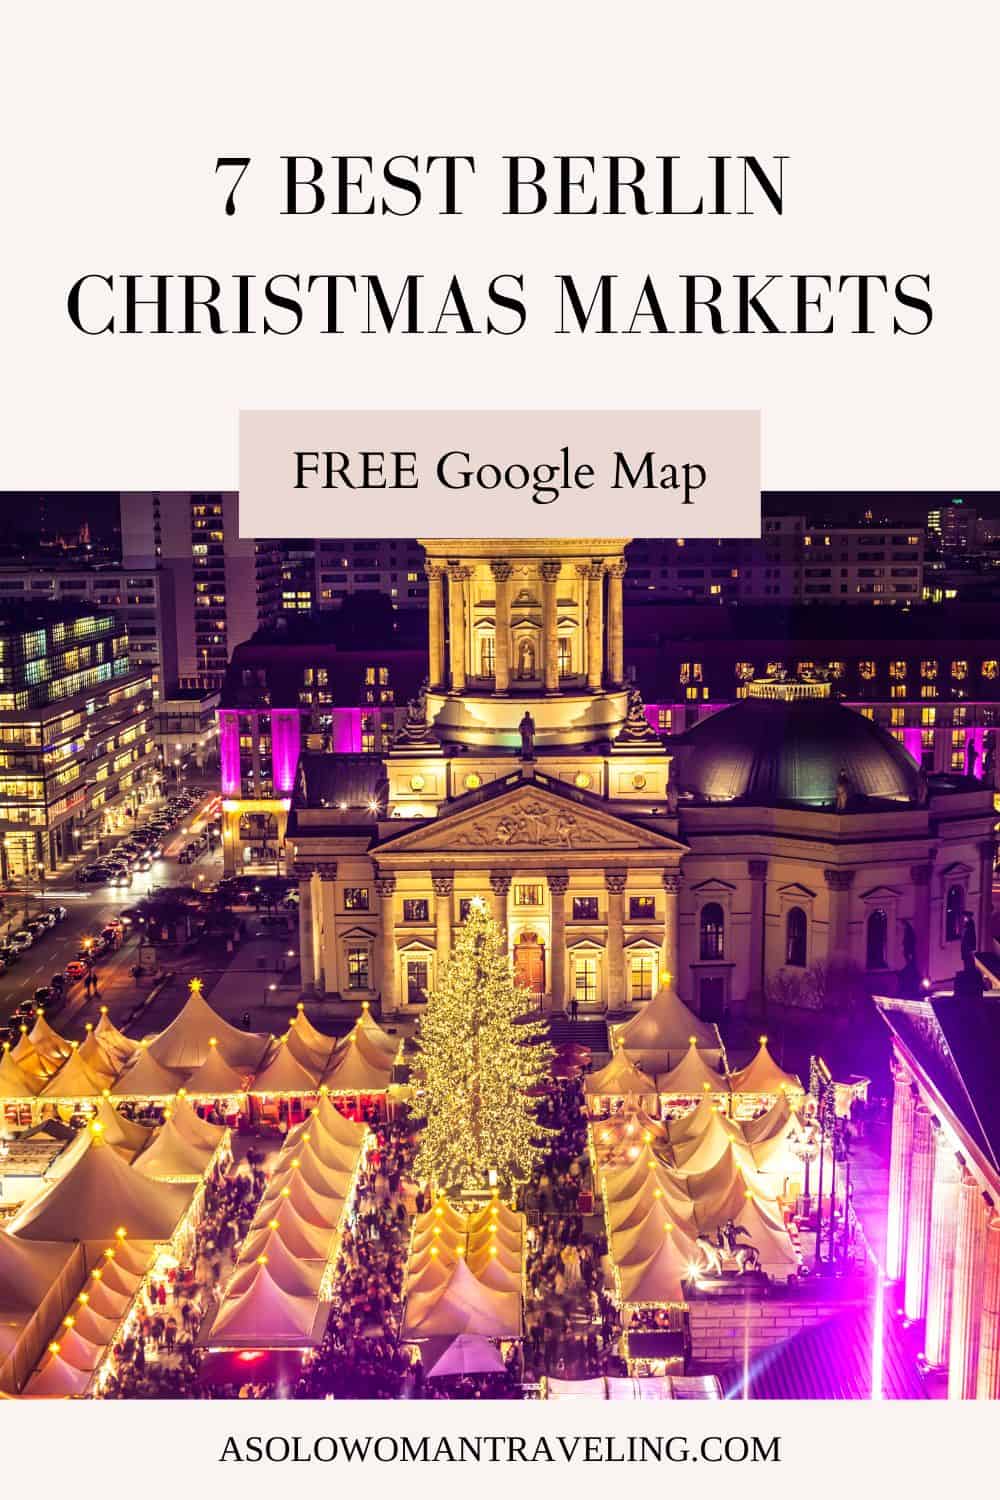 Berlin Christmas Markets, 7 Best!